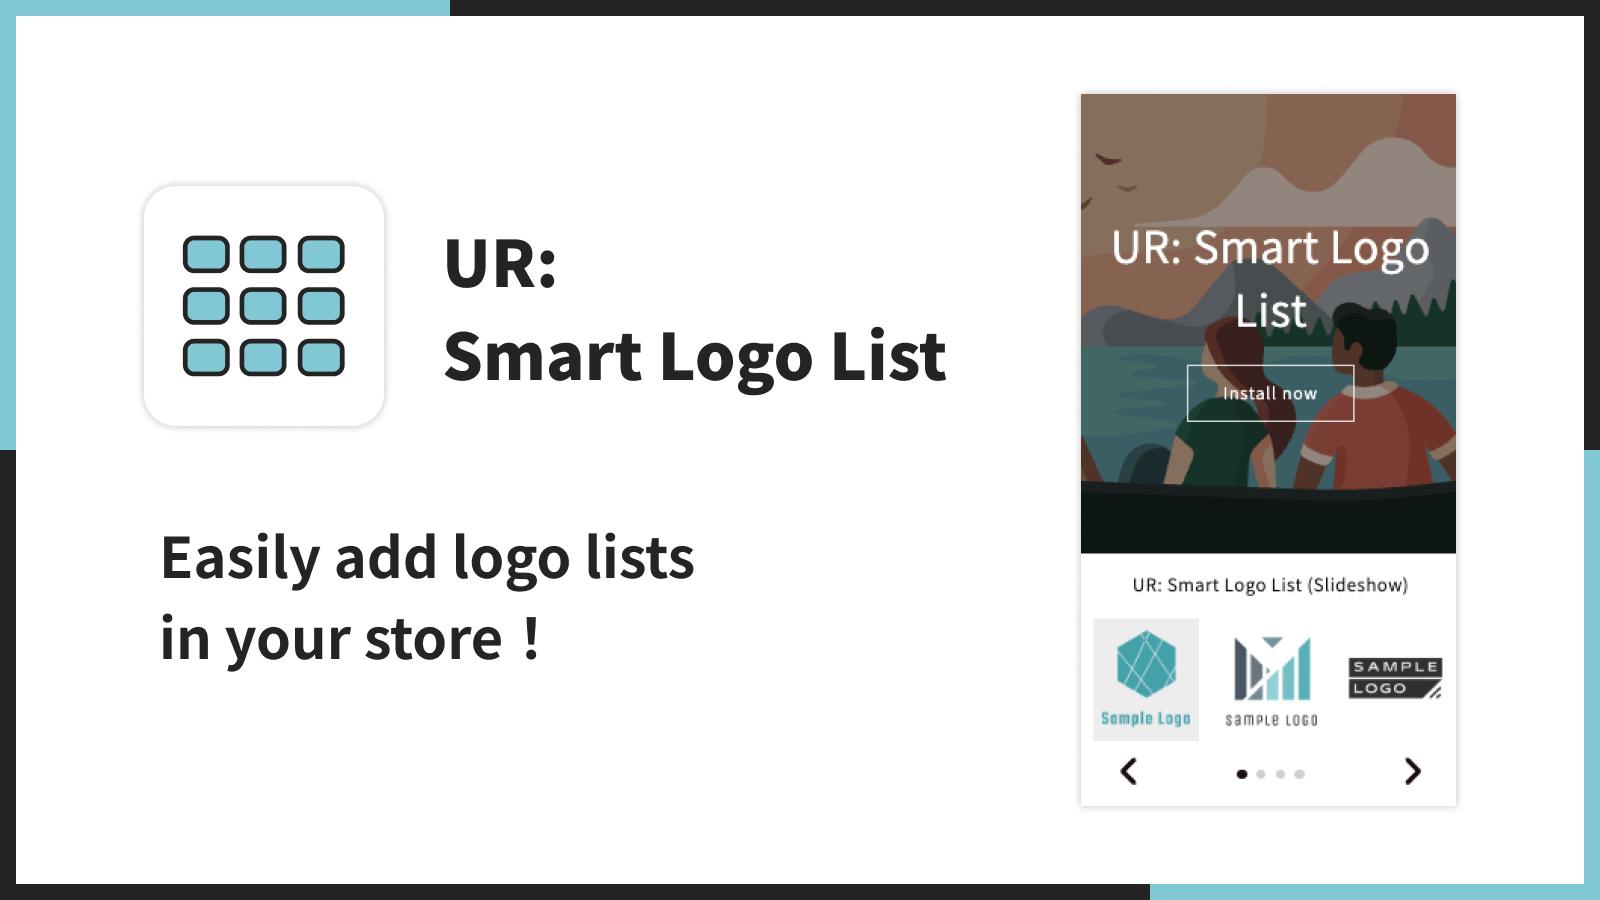 UR: Smart Logo List | Lägg enkelt till logolistor i din butik！